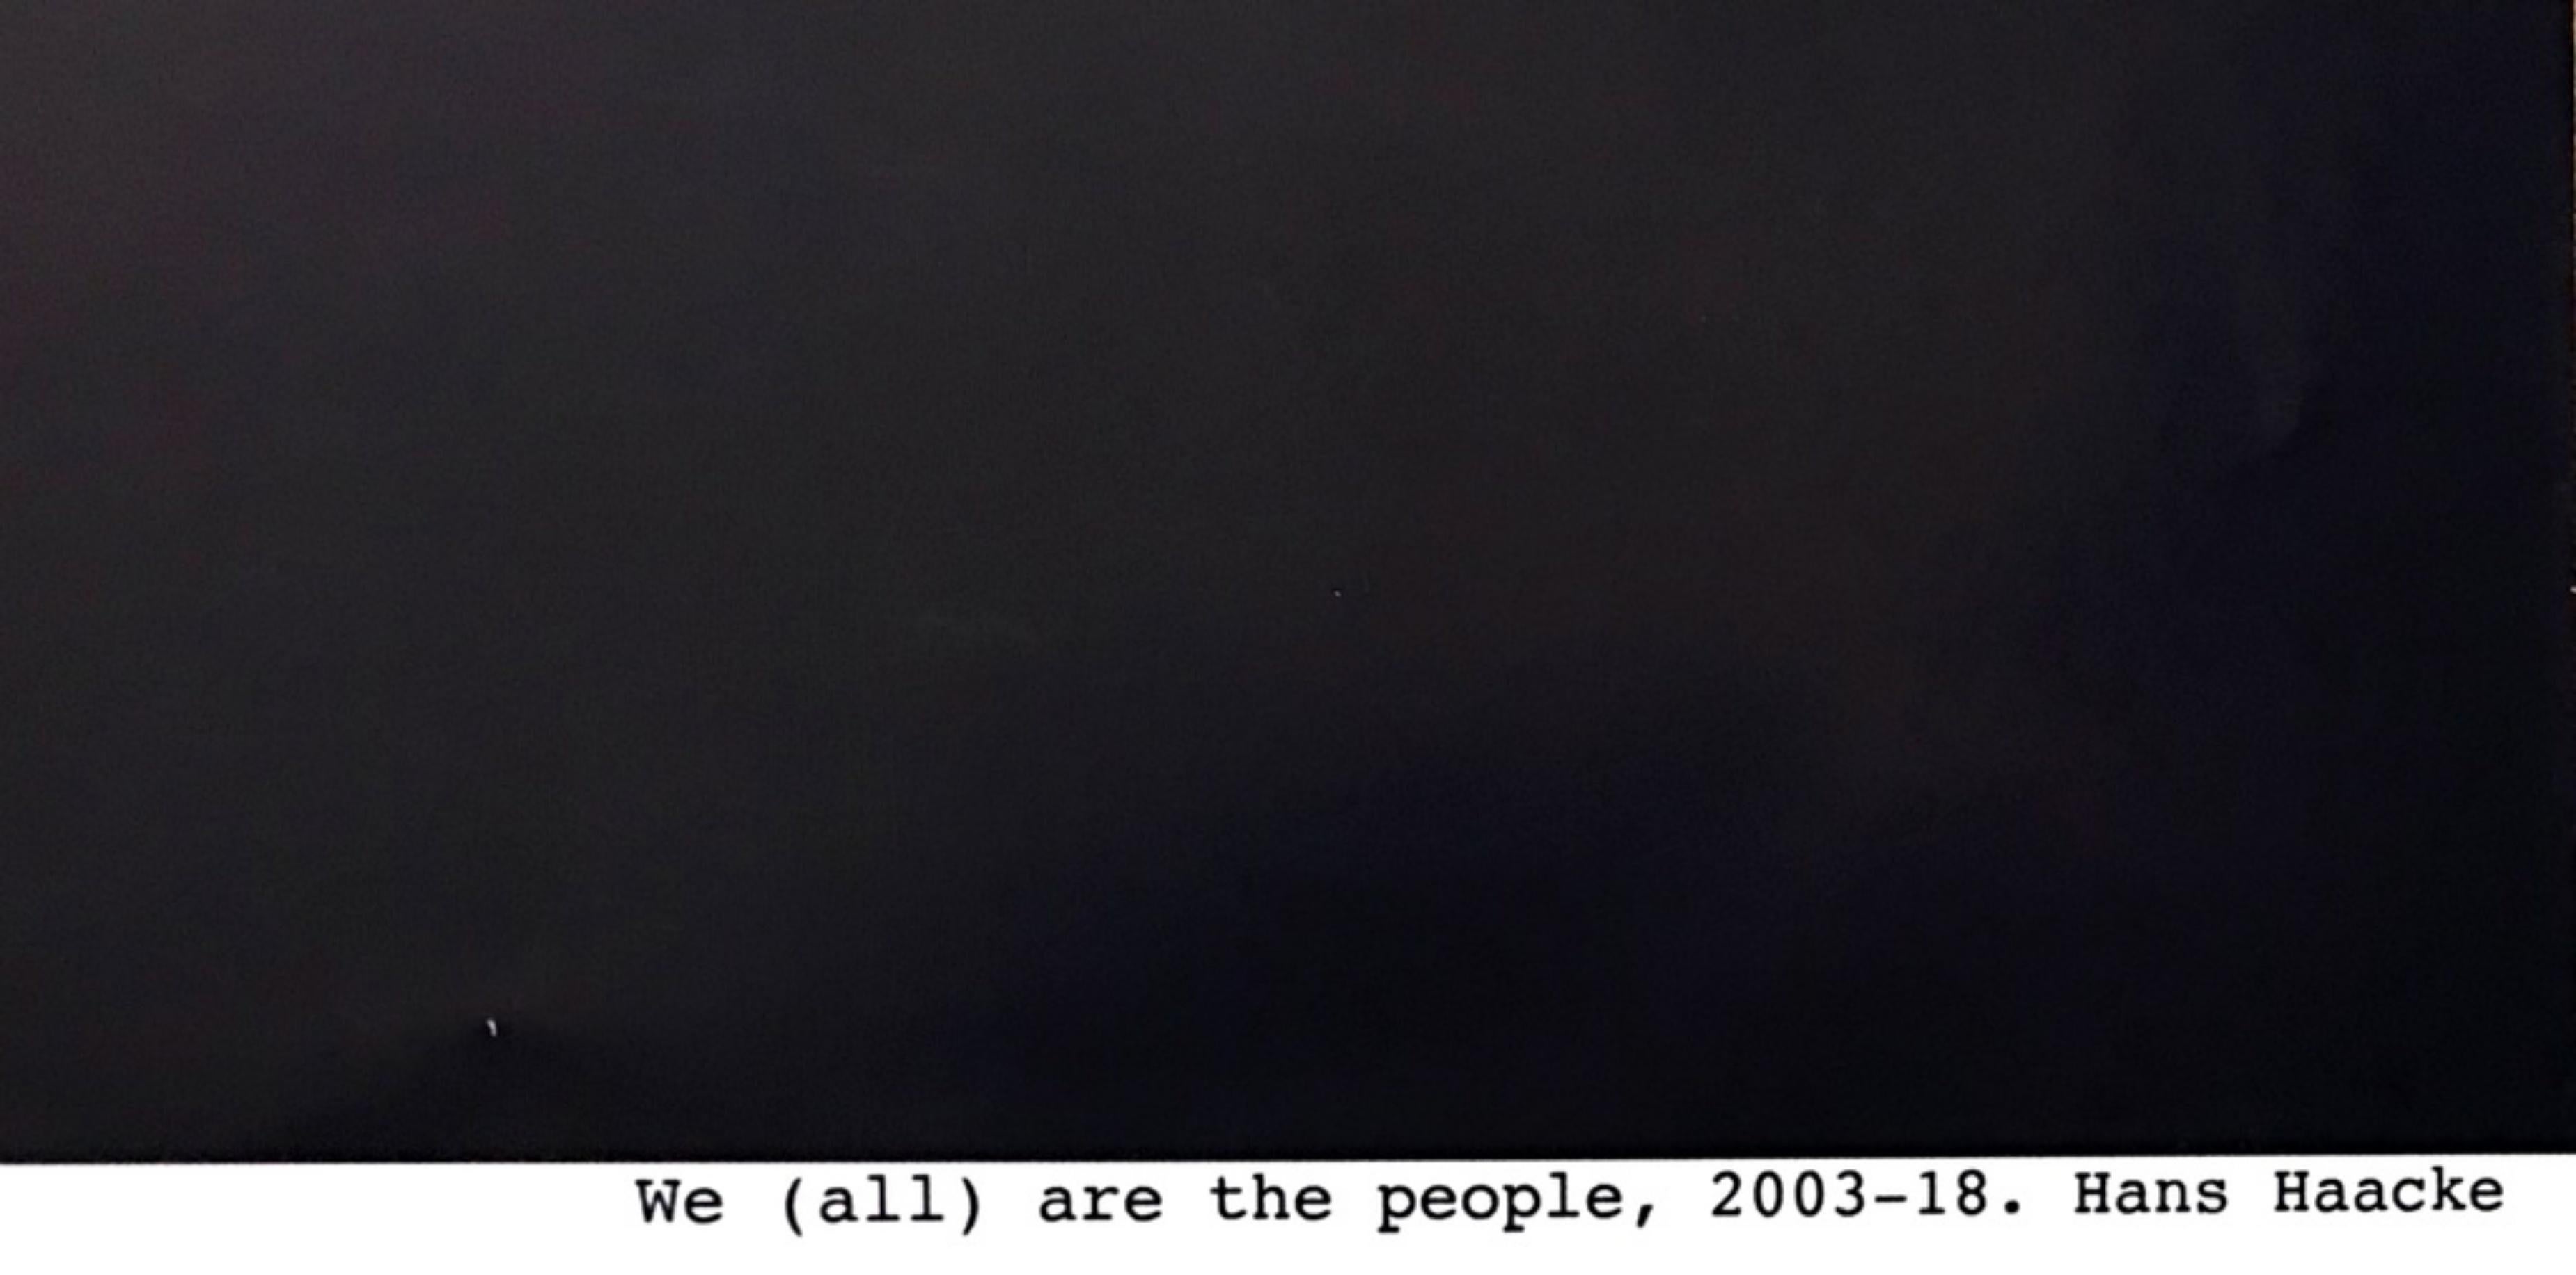 HANS HAACKE
Wir (Alle) Sind Das Volk-Wir (alle) Sind Das Volk
Farboffsetlithografie auf dünnem Karton 
LARGE: 36 × 24 Zoll
Ungerahmt
Dieses auffällige Plakat wurde von Hans Haacke für die Documenta 2017-2018 geschaffen. Für die Documenta 14 schuf